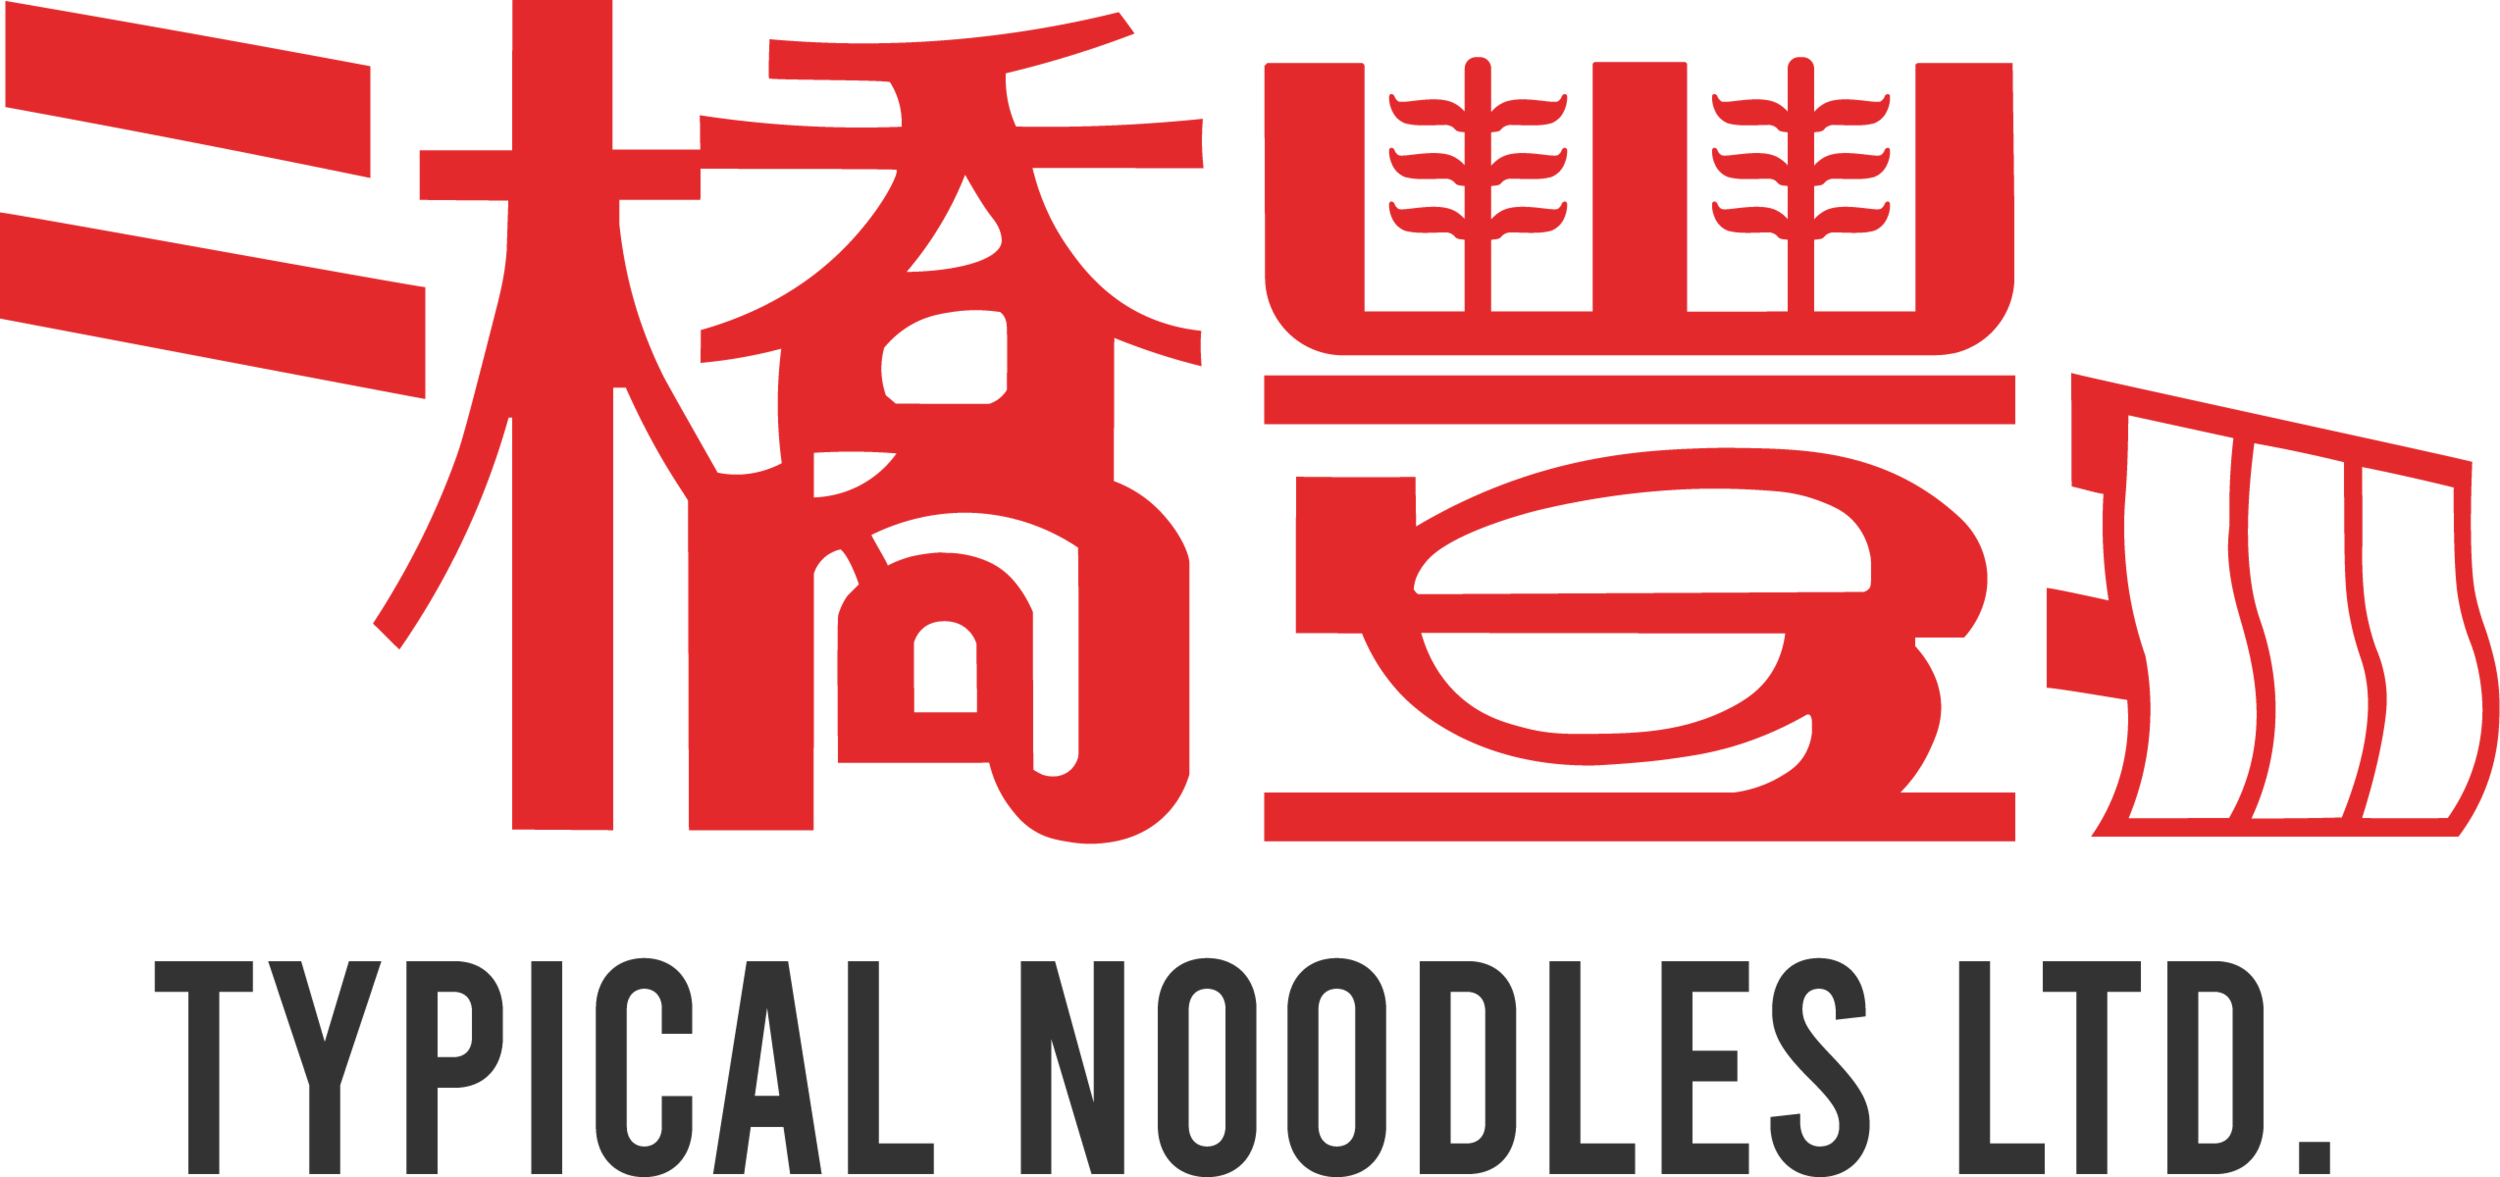 Typical Noodles Ltd.